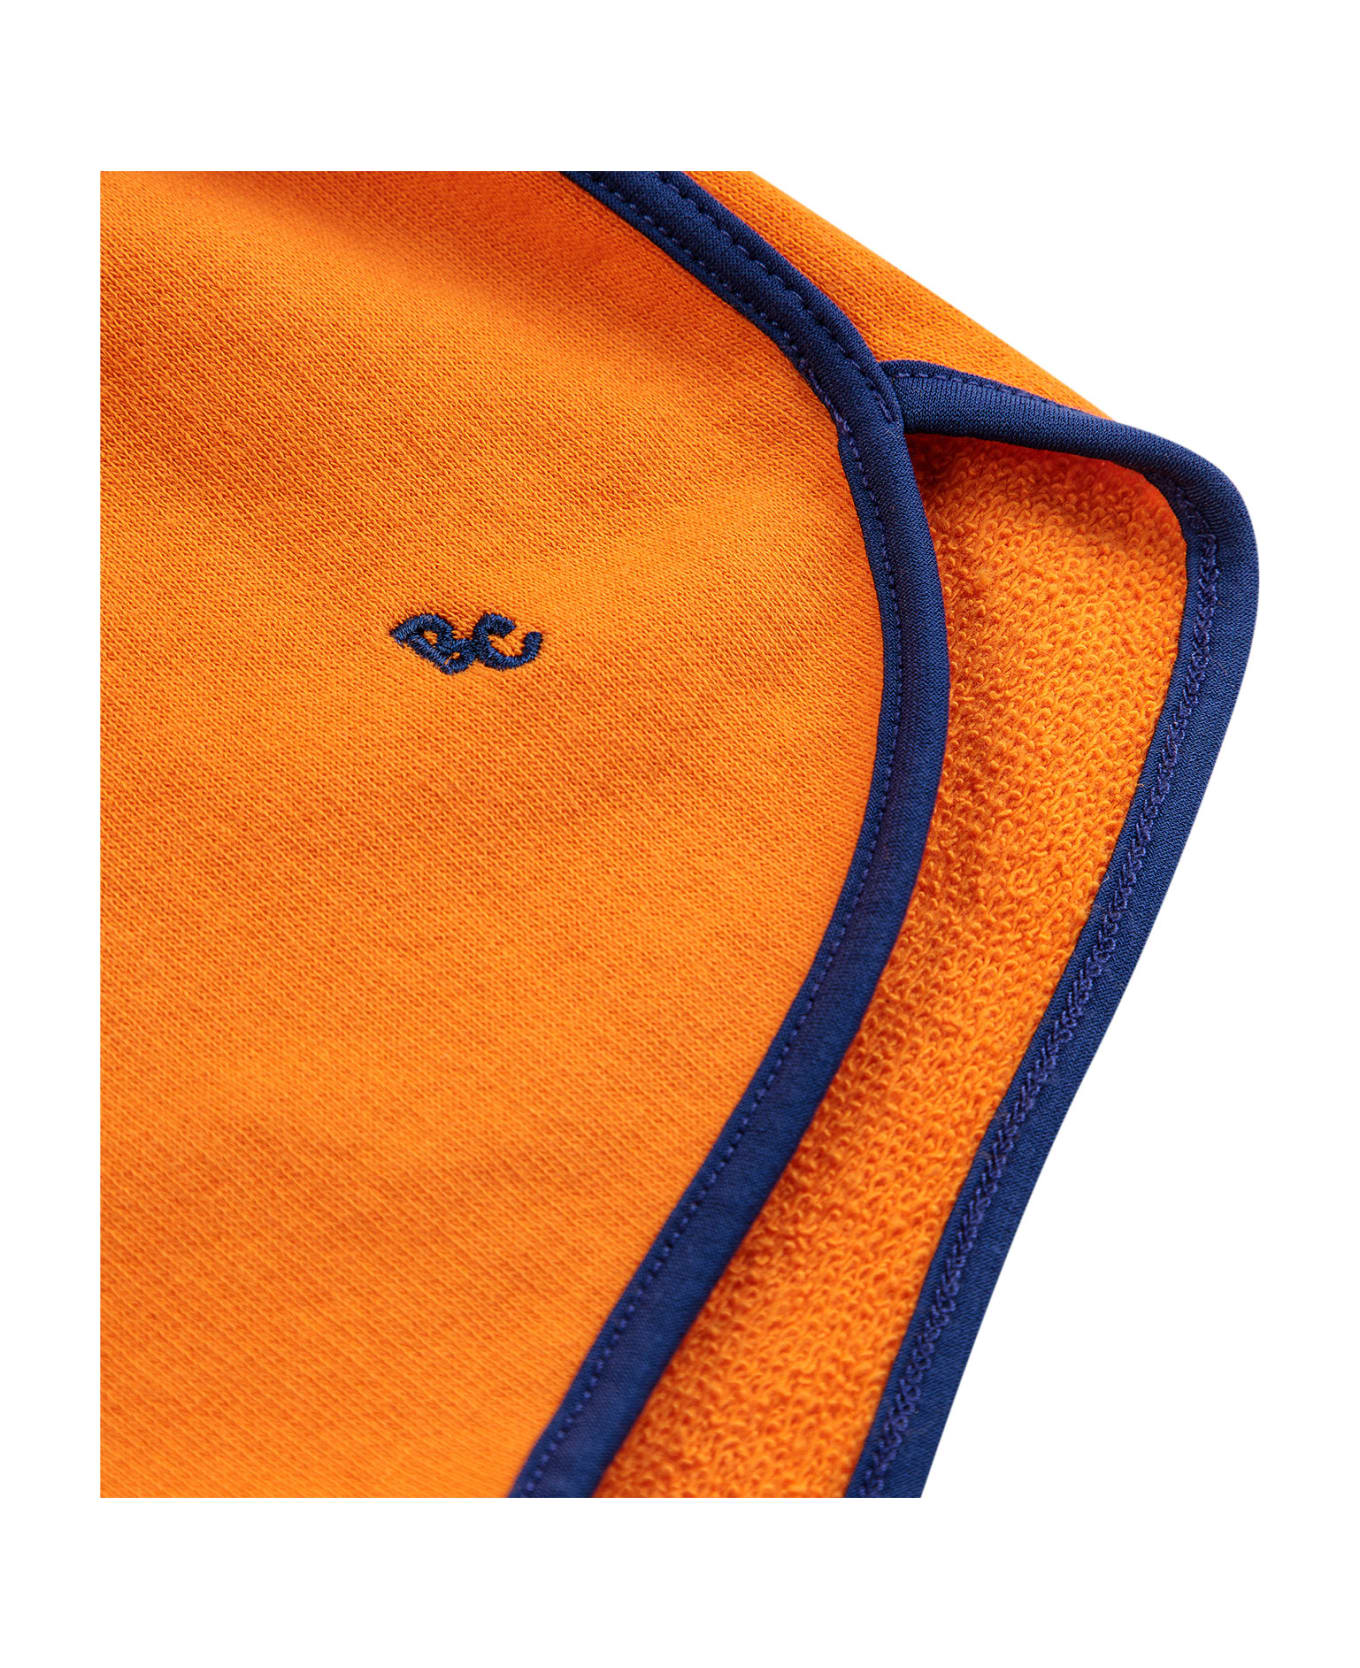 Bobo Choses Orange Shorts For Kids With Logo - Orange